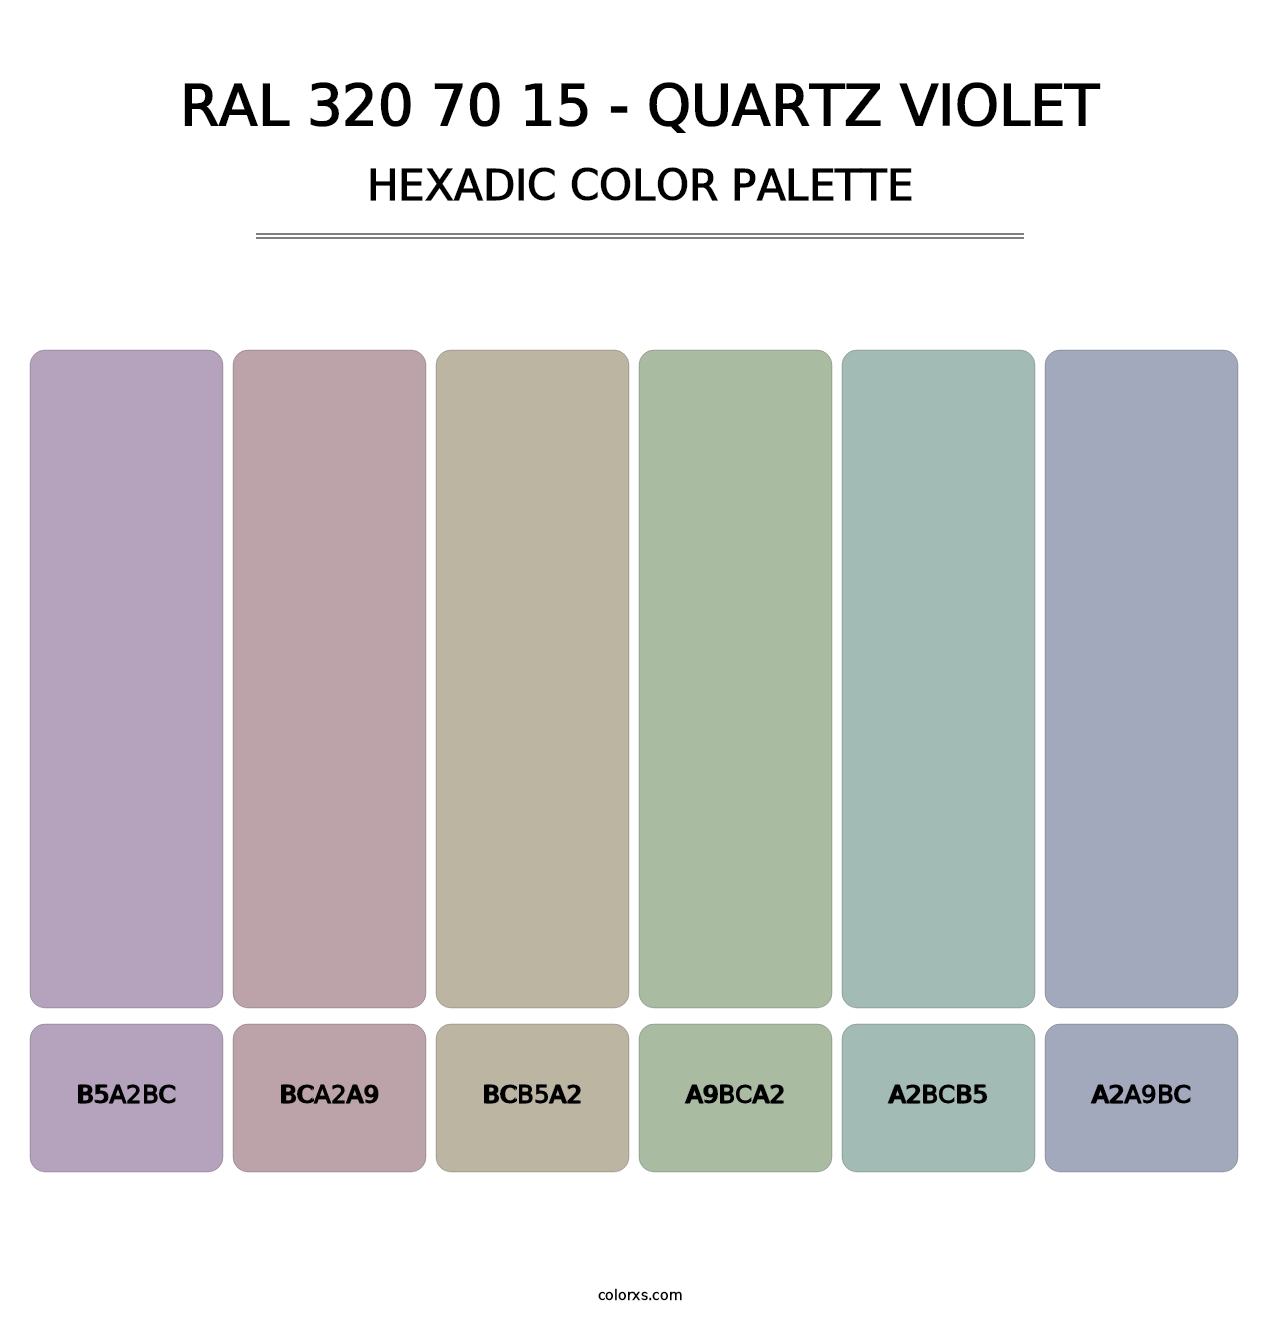 RAL 320 70 15 - Quartz Violet - Hexadic Color Palette